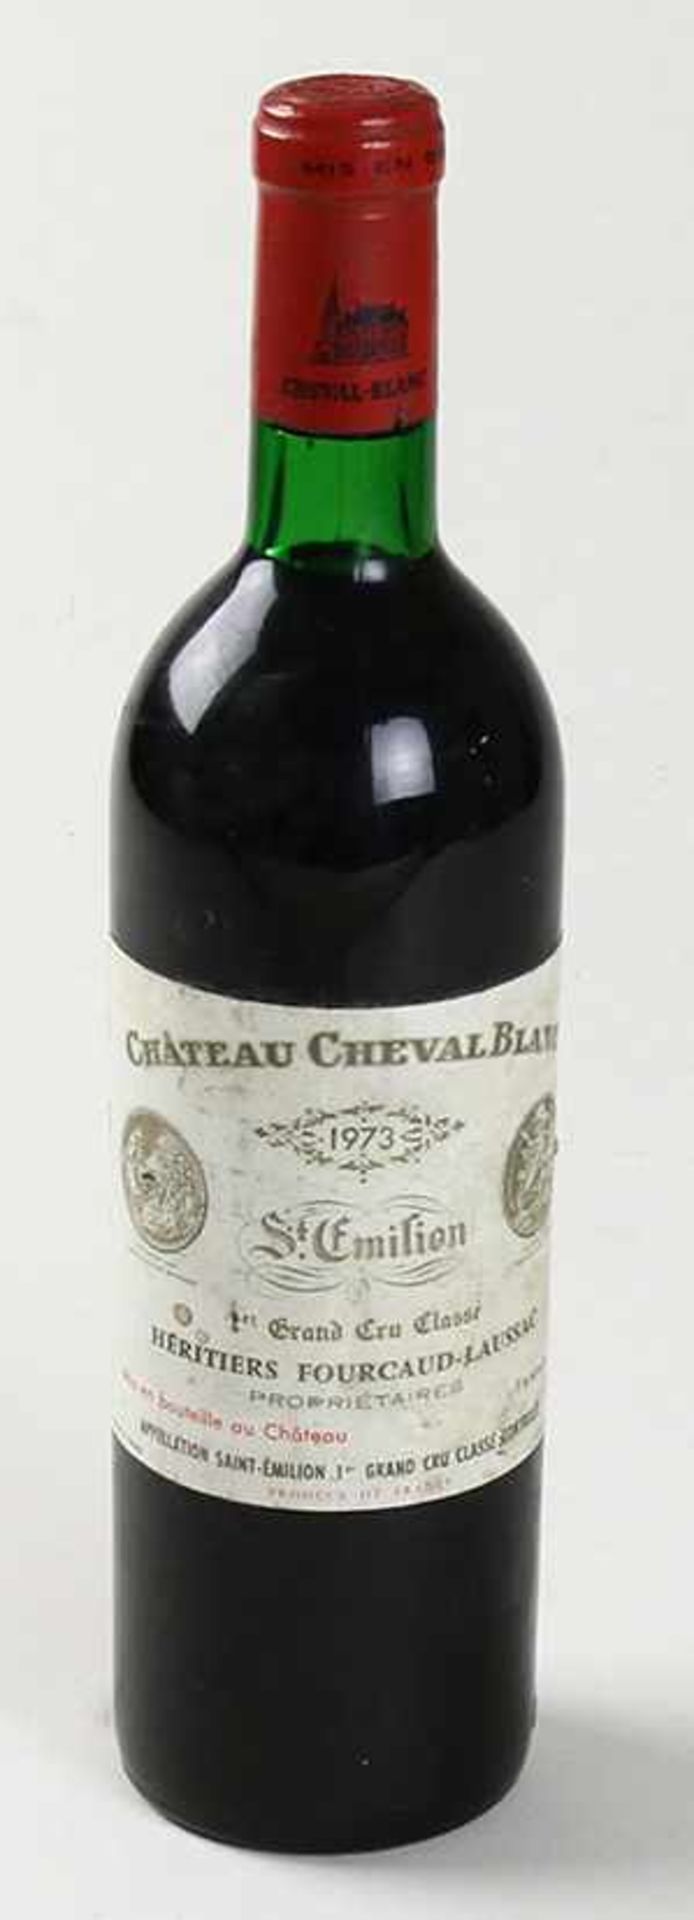 Een fles Chateau Cheval Blanc, St. Emilion, 1er Grand Cru Classé, 1973, niveau fles is goed, vlekken